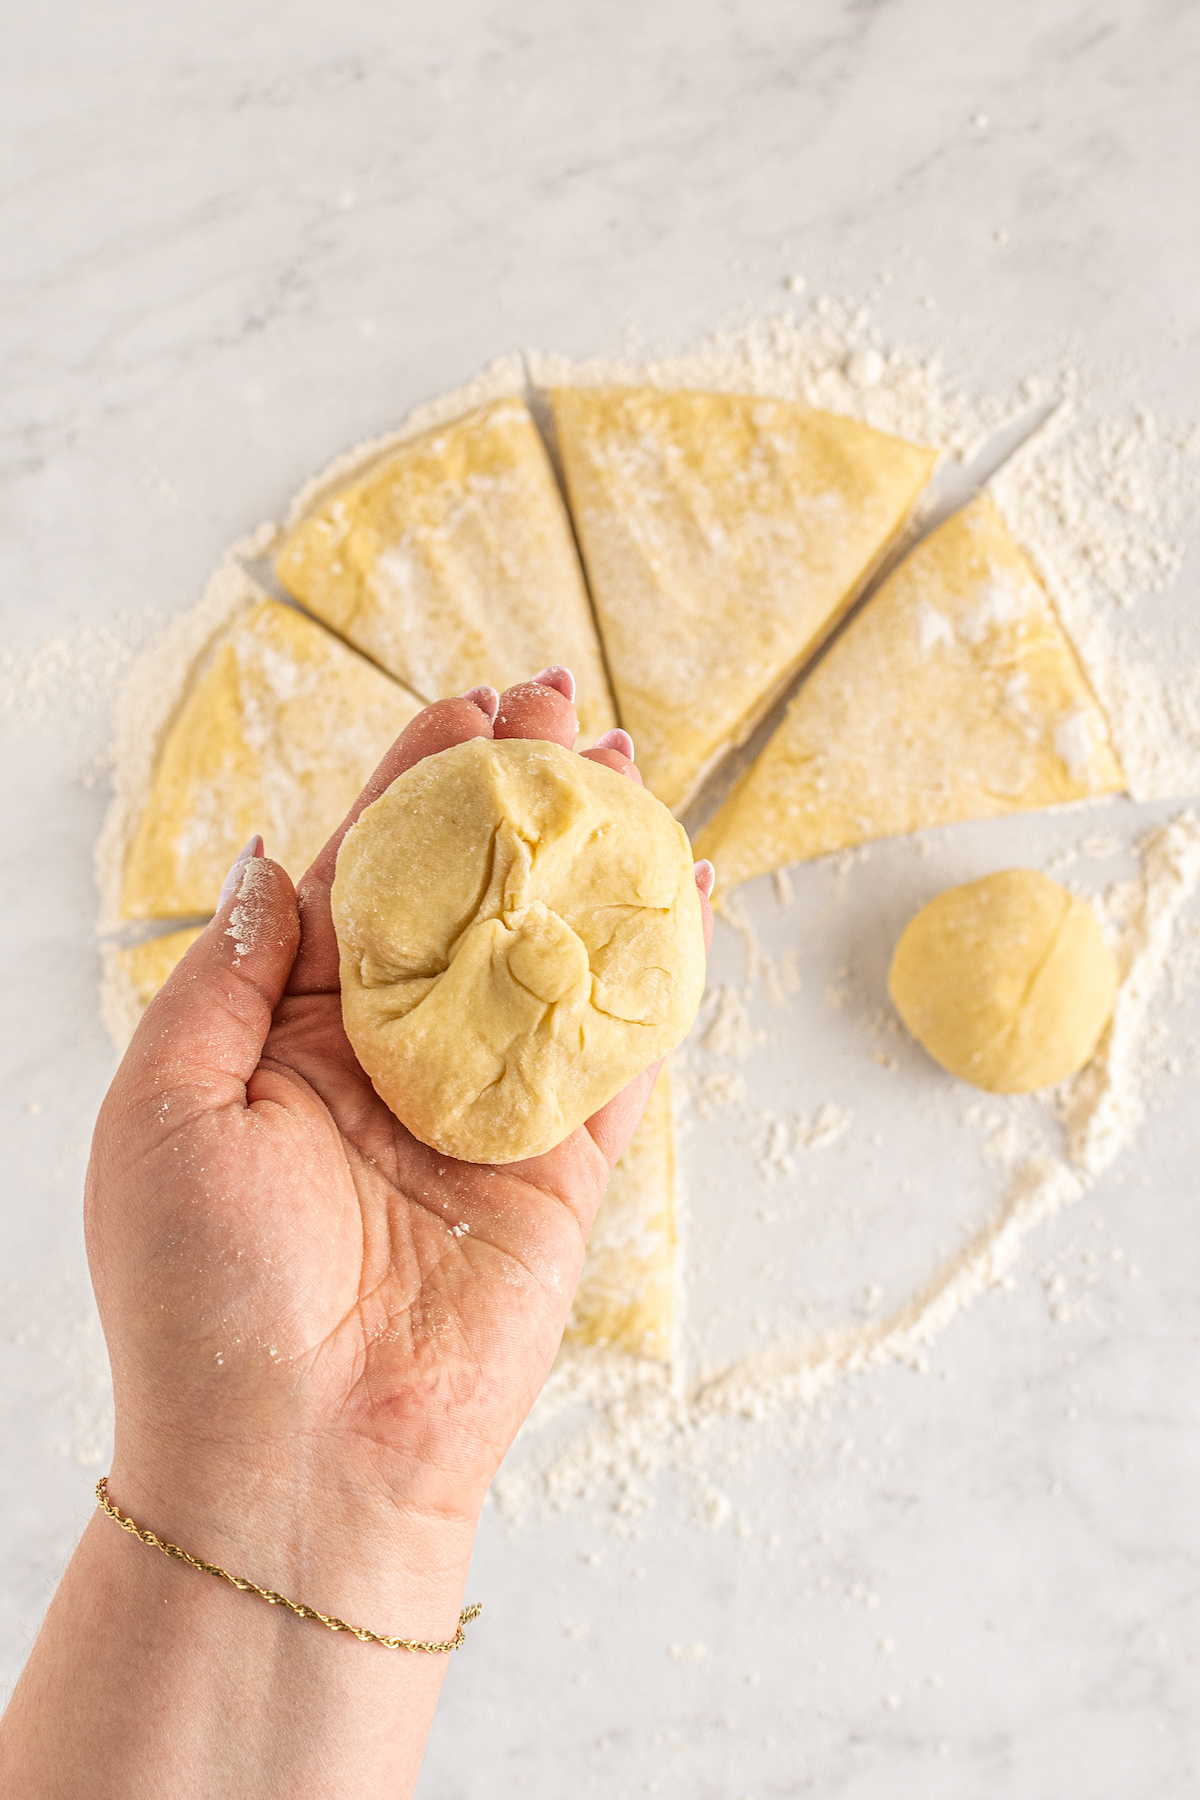 A small piece of brioche dough, shaped into a bun.